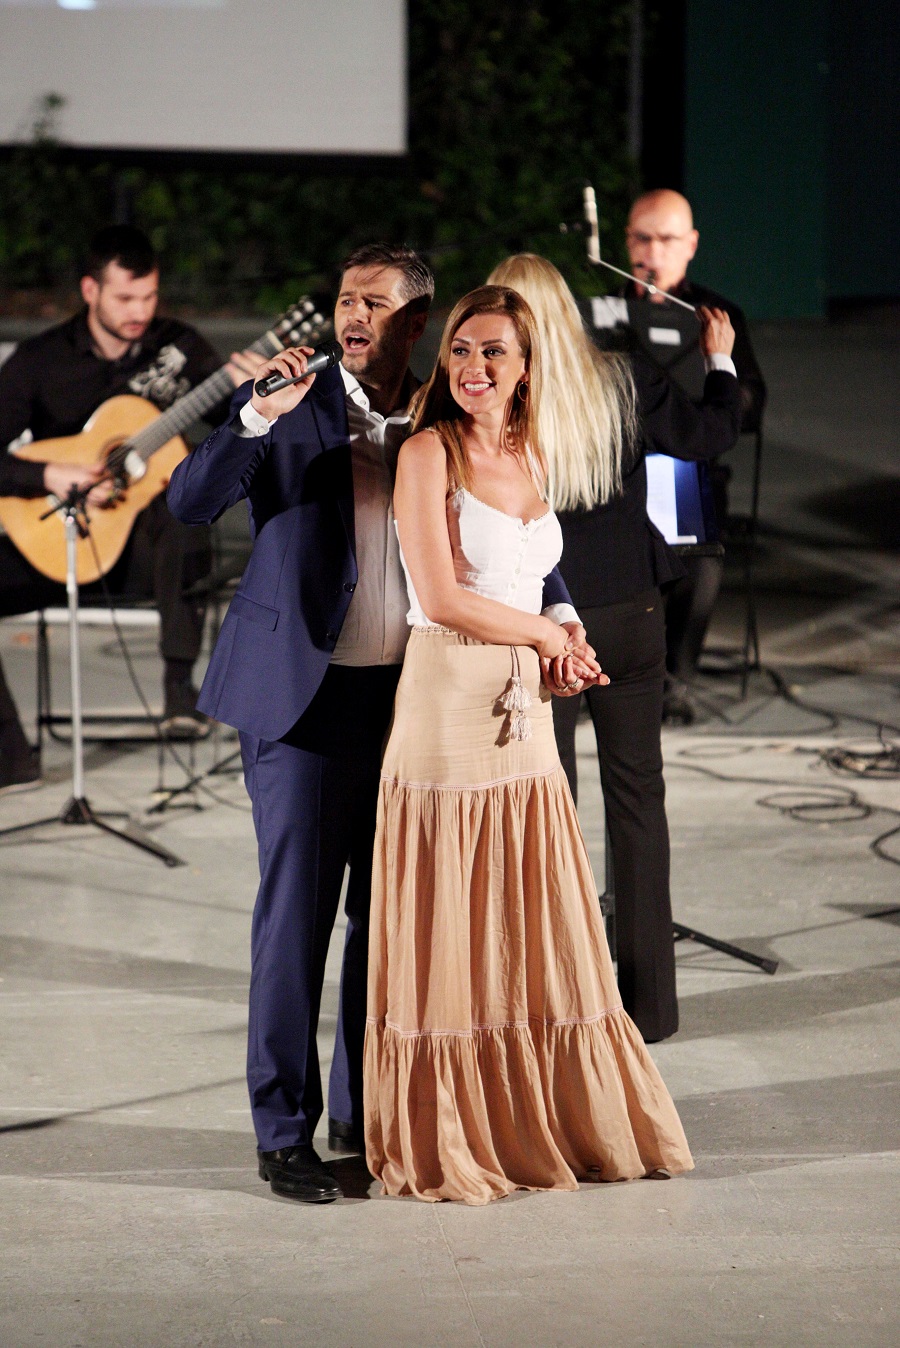 Ξαφνικός χωρισμός για ζευγάρι της ελληνικής showbiz ένα μήνα πριν το γάμο!